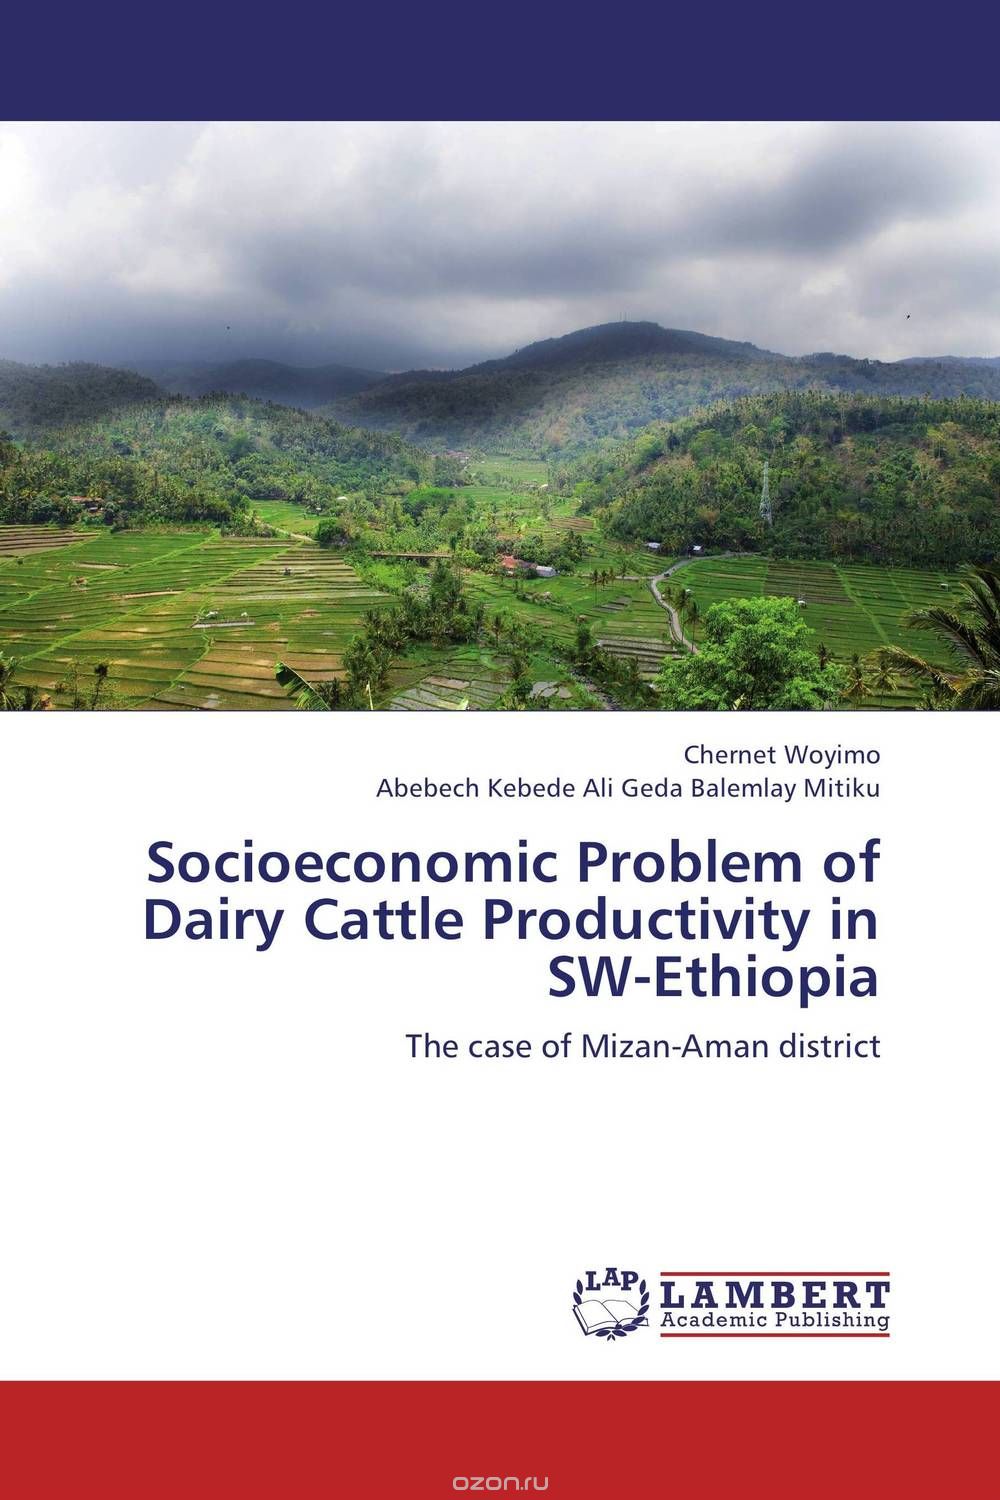 Скачать книгу "Socioeconomic Problem of Dairy Cattle Productivity in SW-Ethiopia"